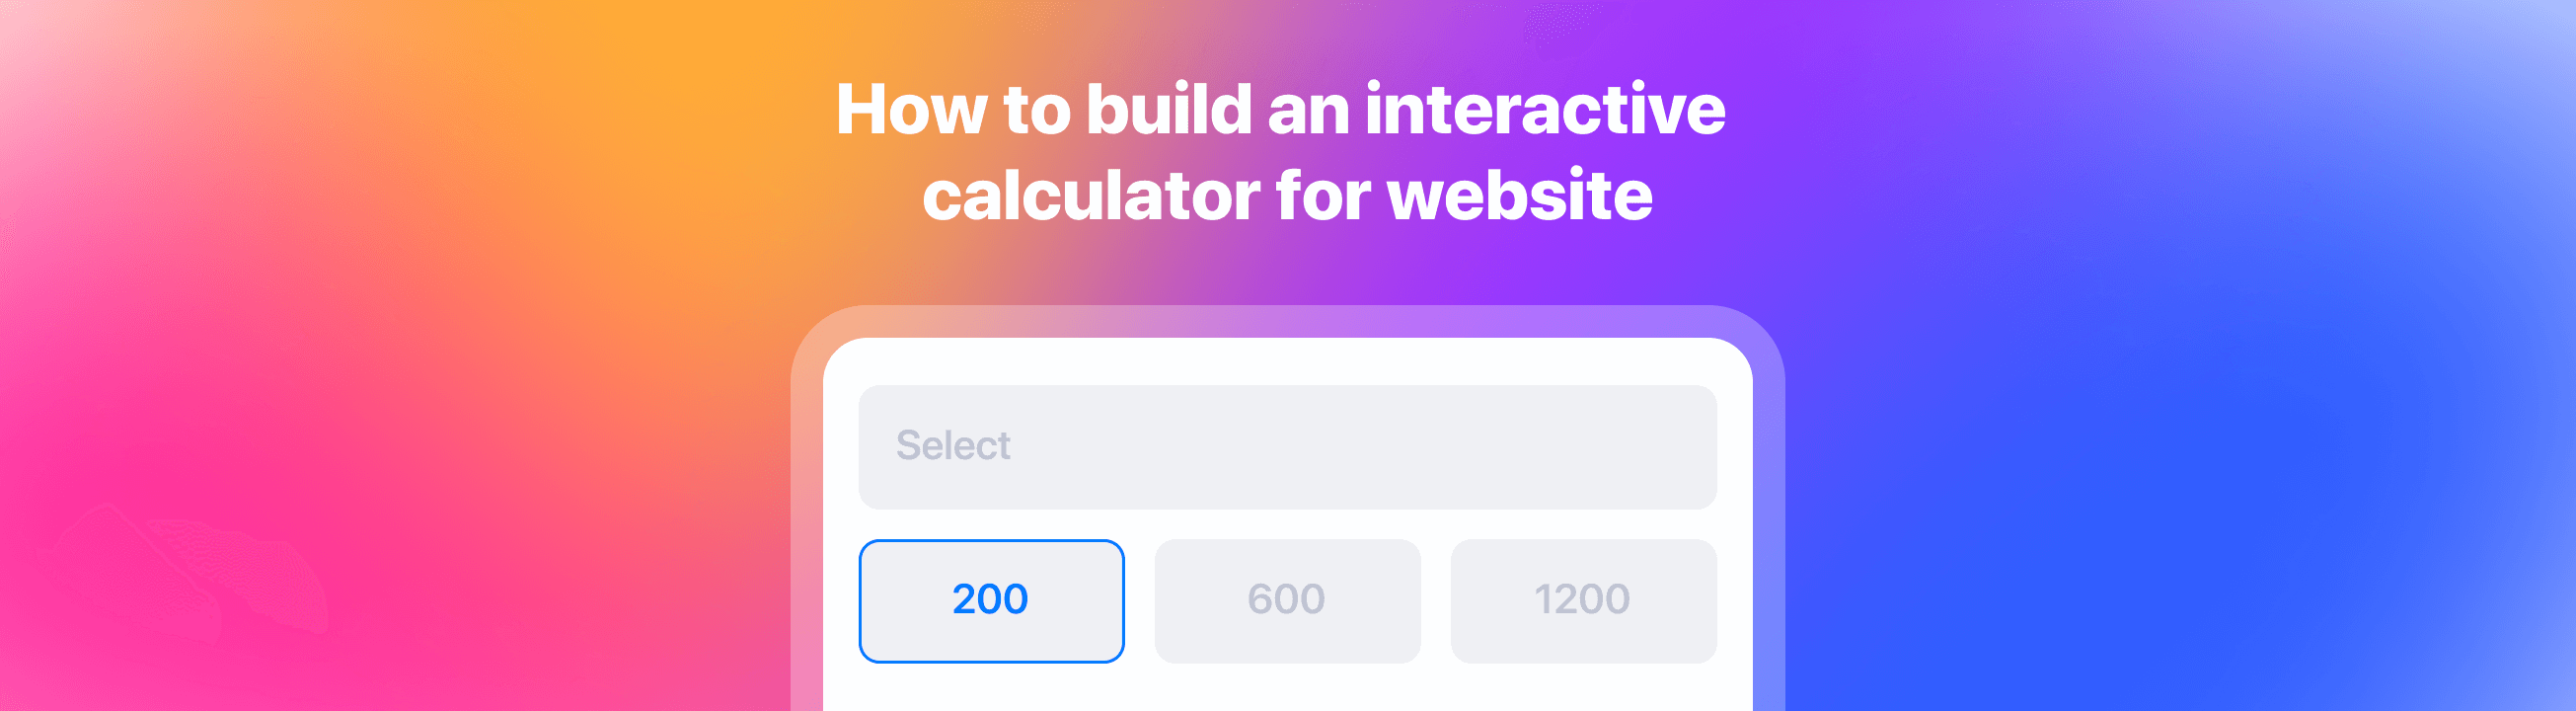 Как создать интерактивный калькулятор для сайта?